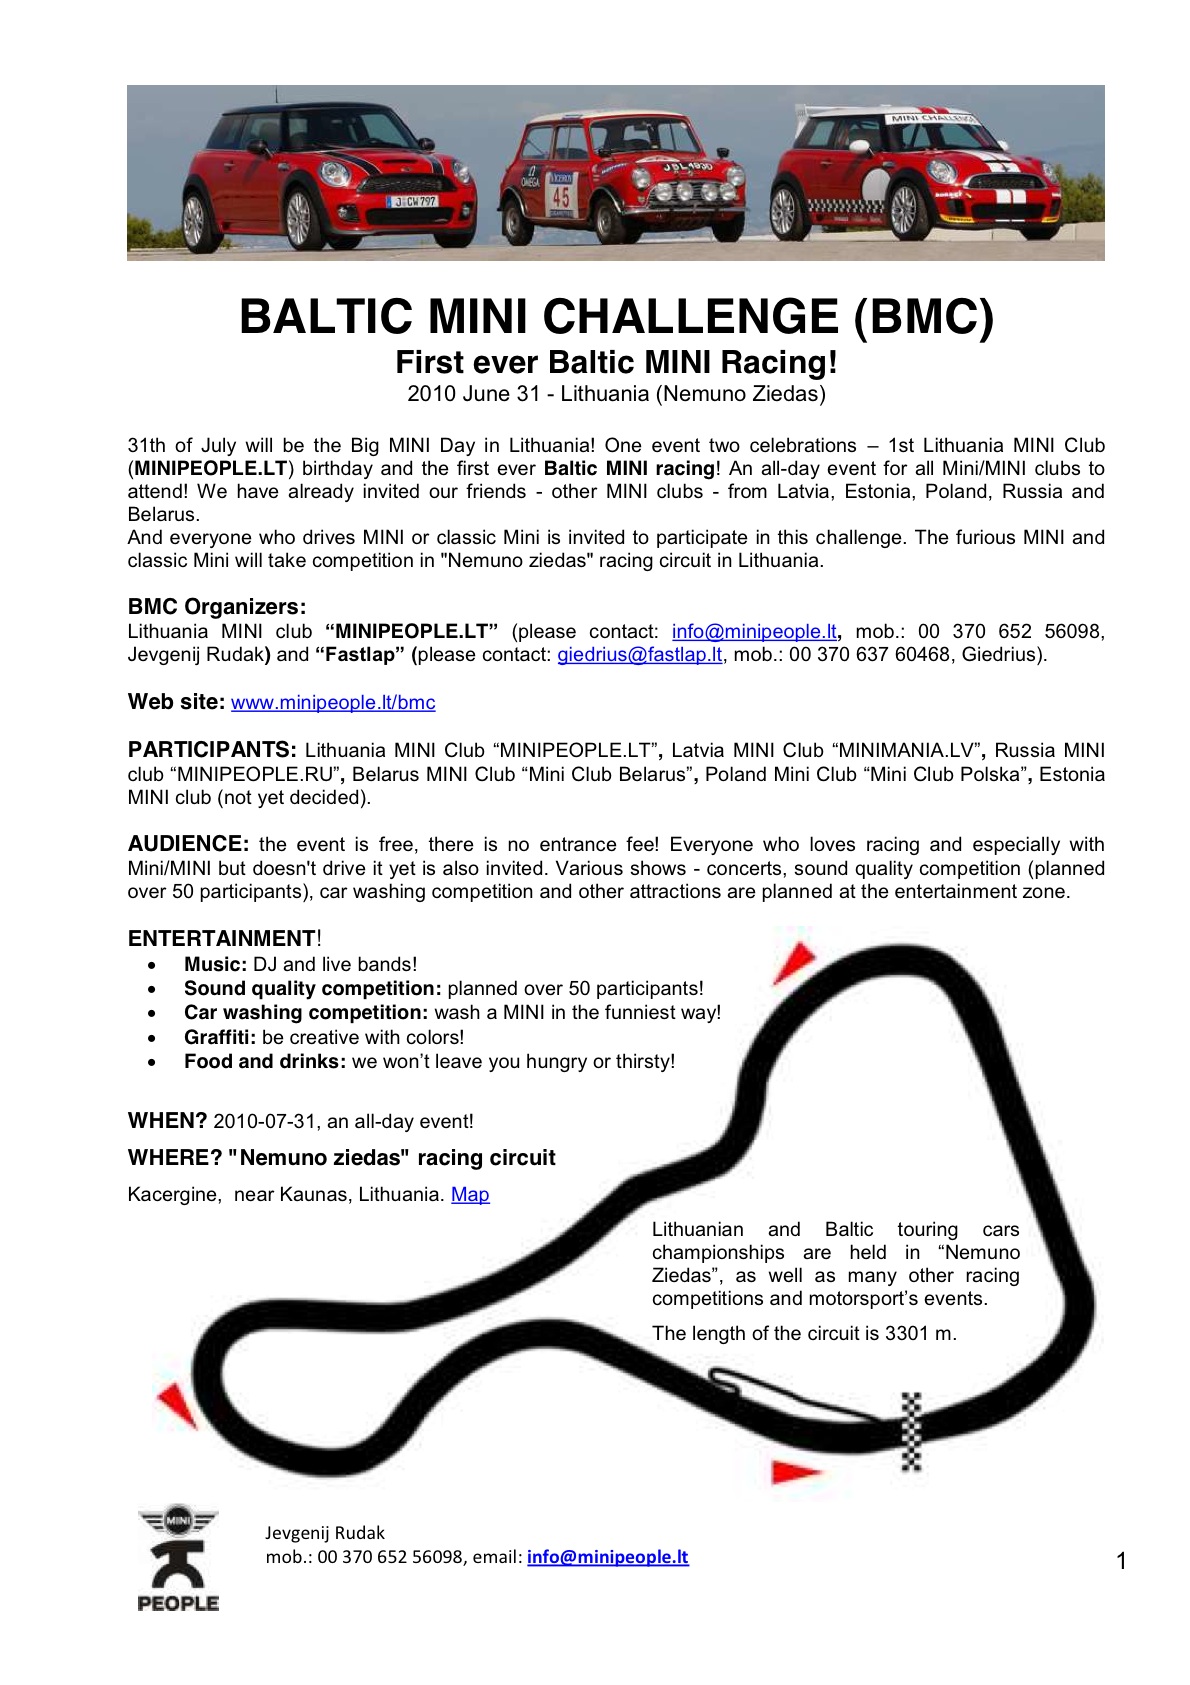 BMC_info_for participants_final_1.jpg